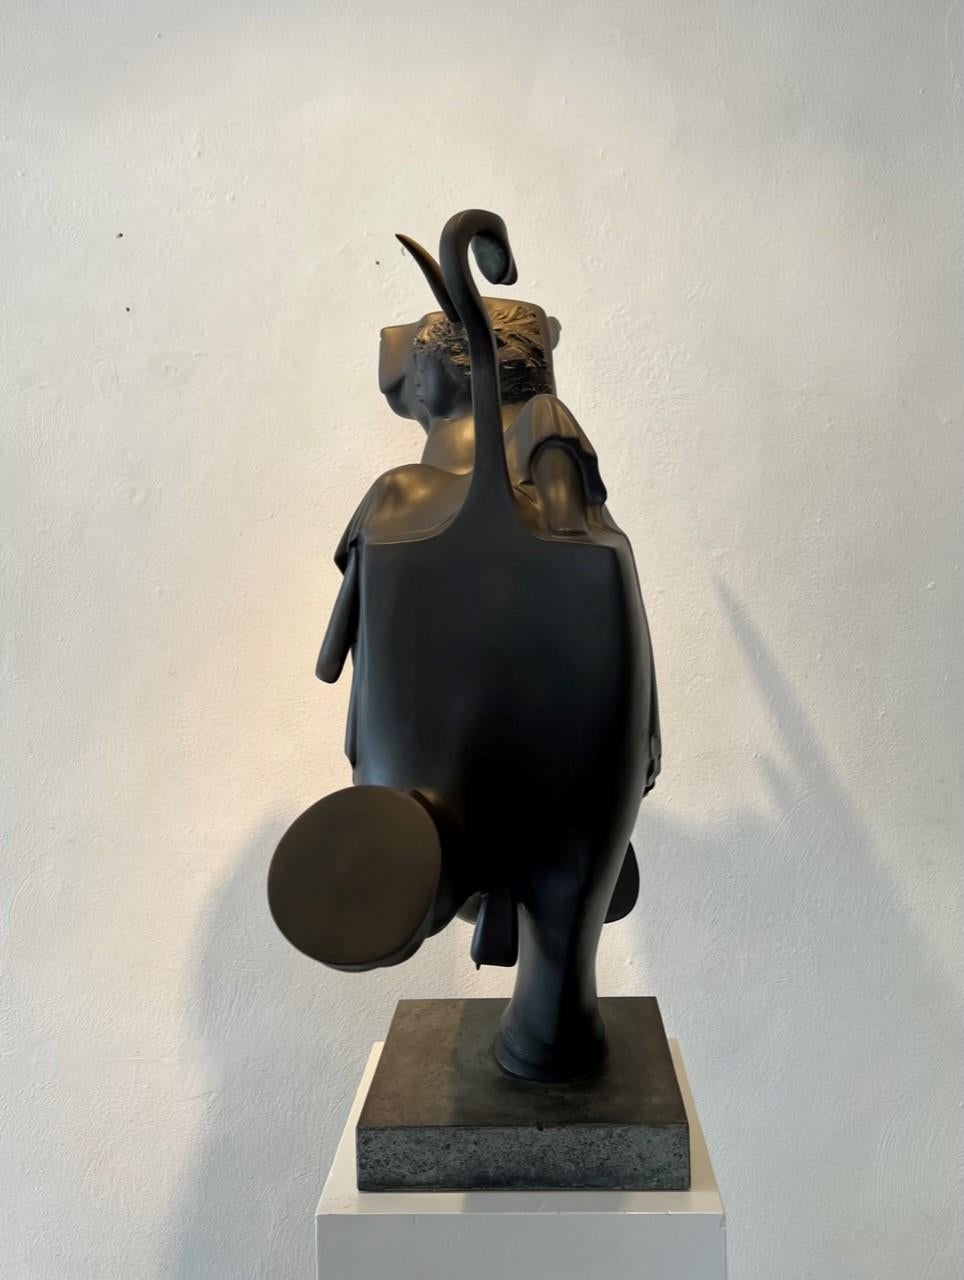 Europa en de Stier 1 Europ and the Bull Mythology Bronze Sculpture In Stock - Gold Figurative Sculpture by Evert den Hartog